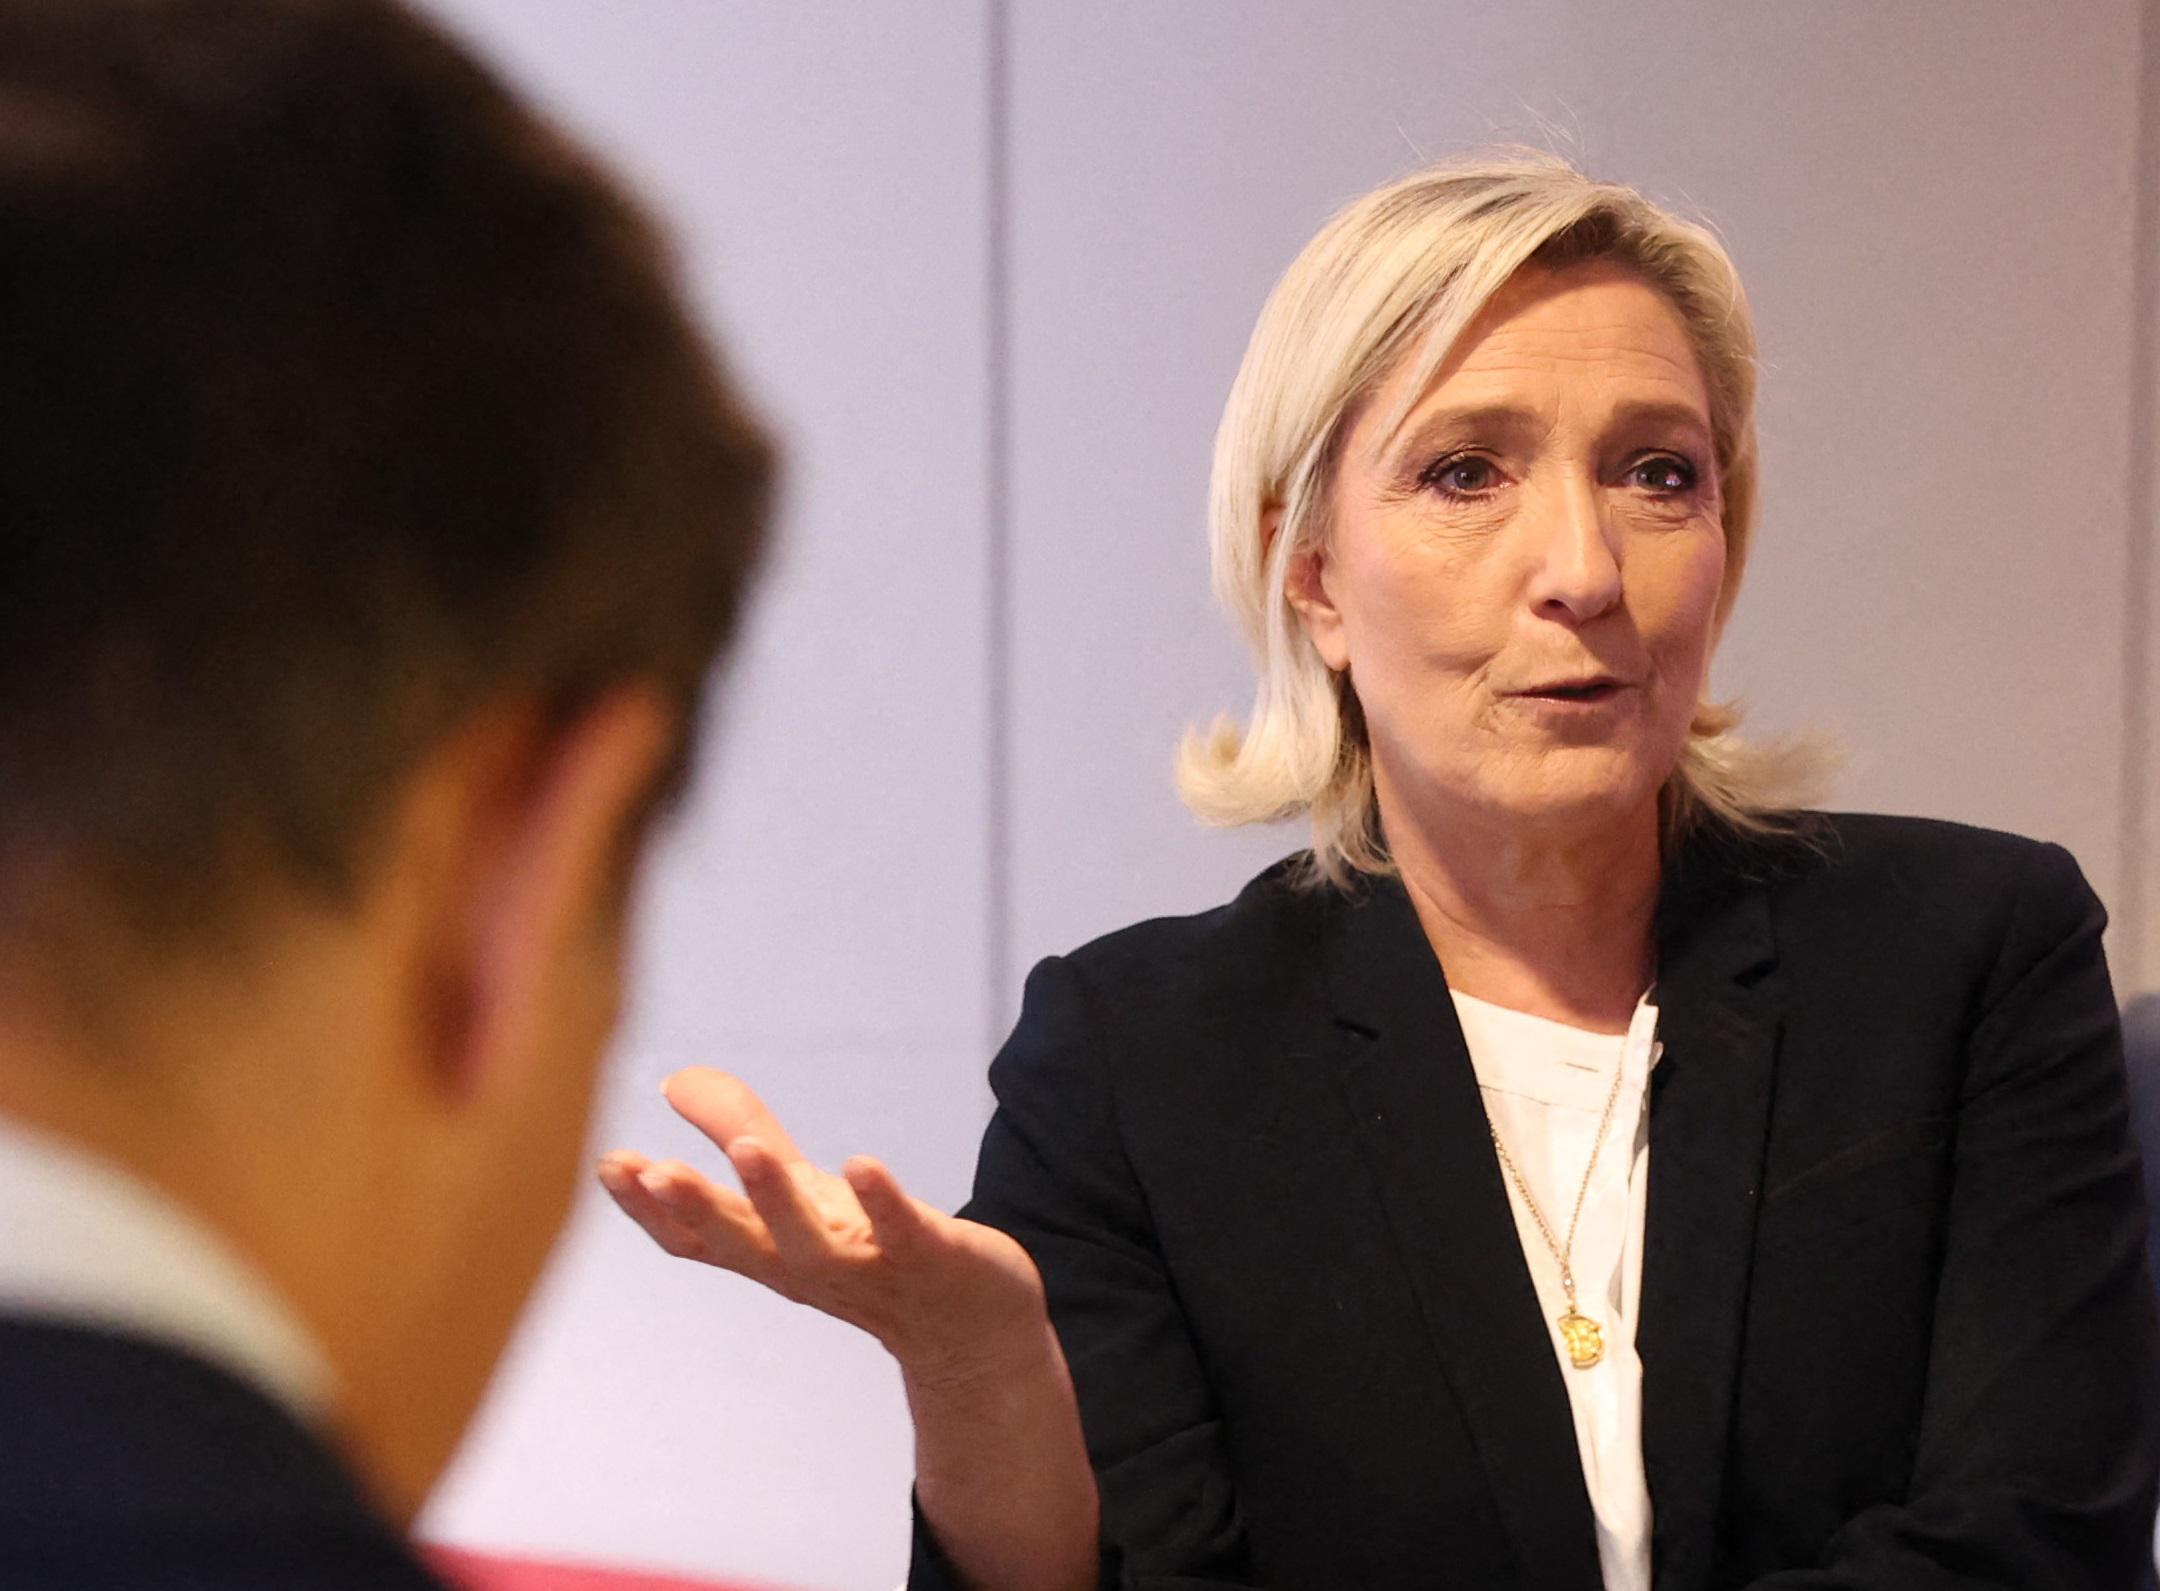 Francia - Marine Le Pen nel mirino: indagine su finanziamenti illeciti